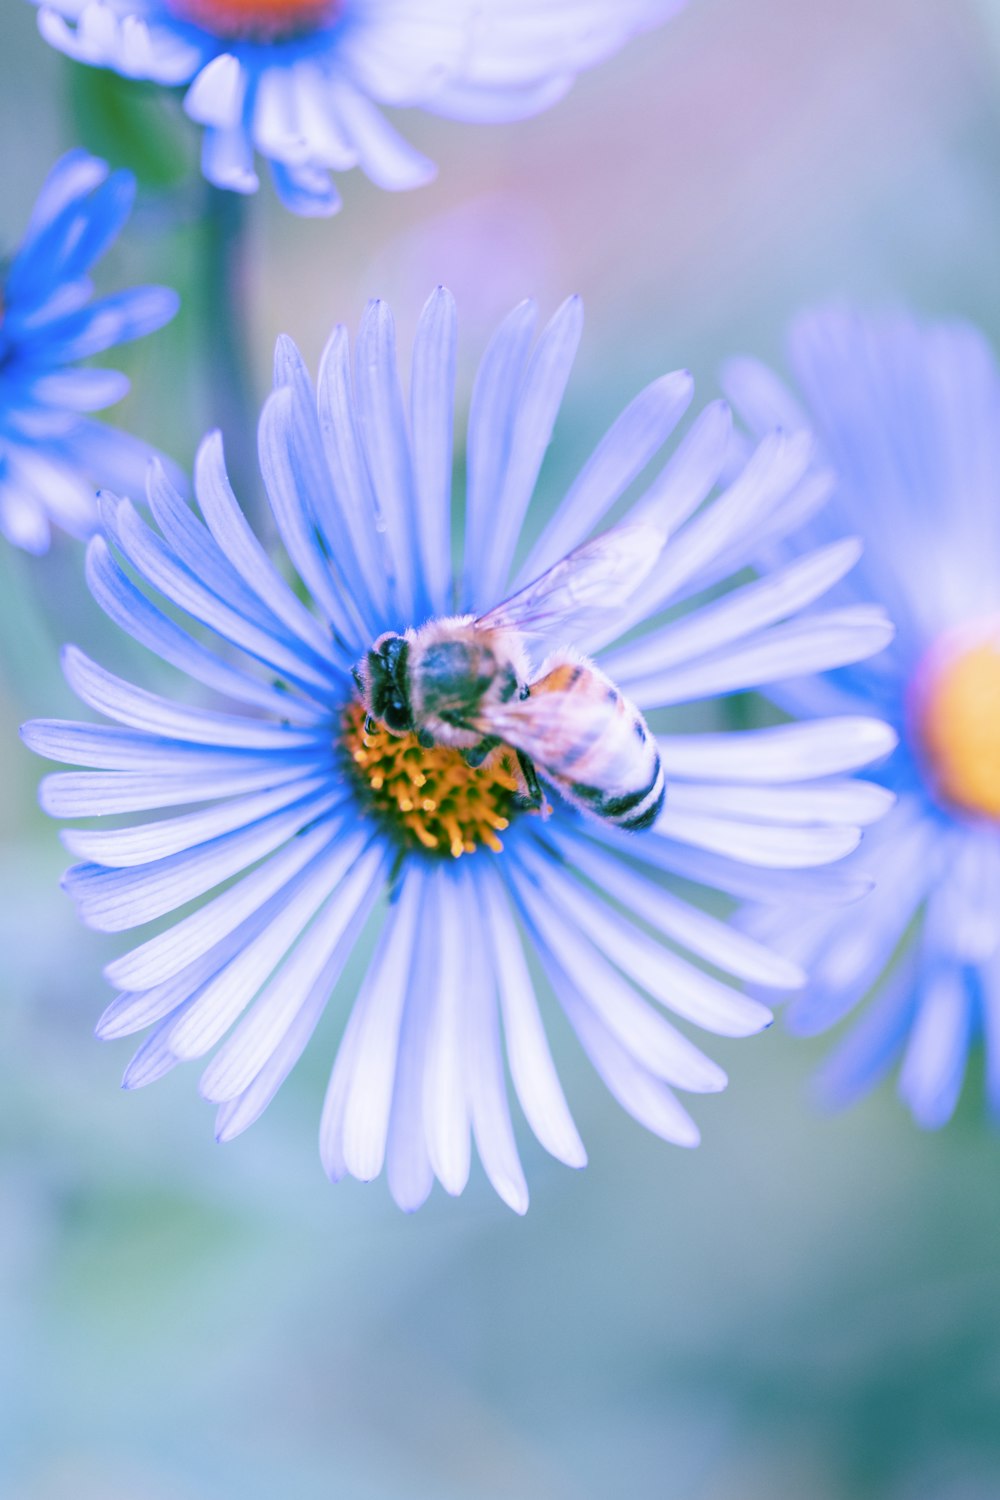 abeille noire et jaune sur fleur bleue et blanche photo – Photo Fleur  Gratuite sur Unsplash